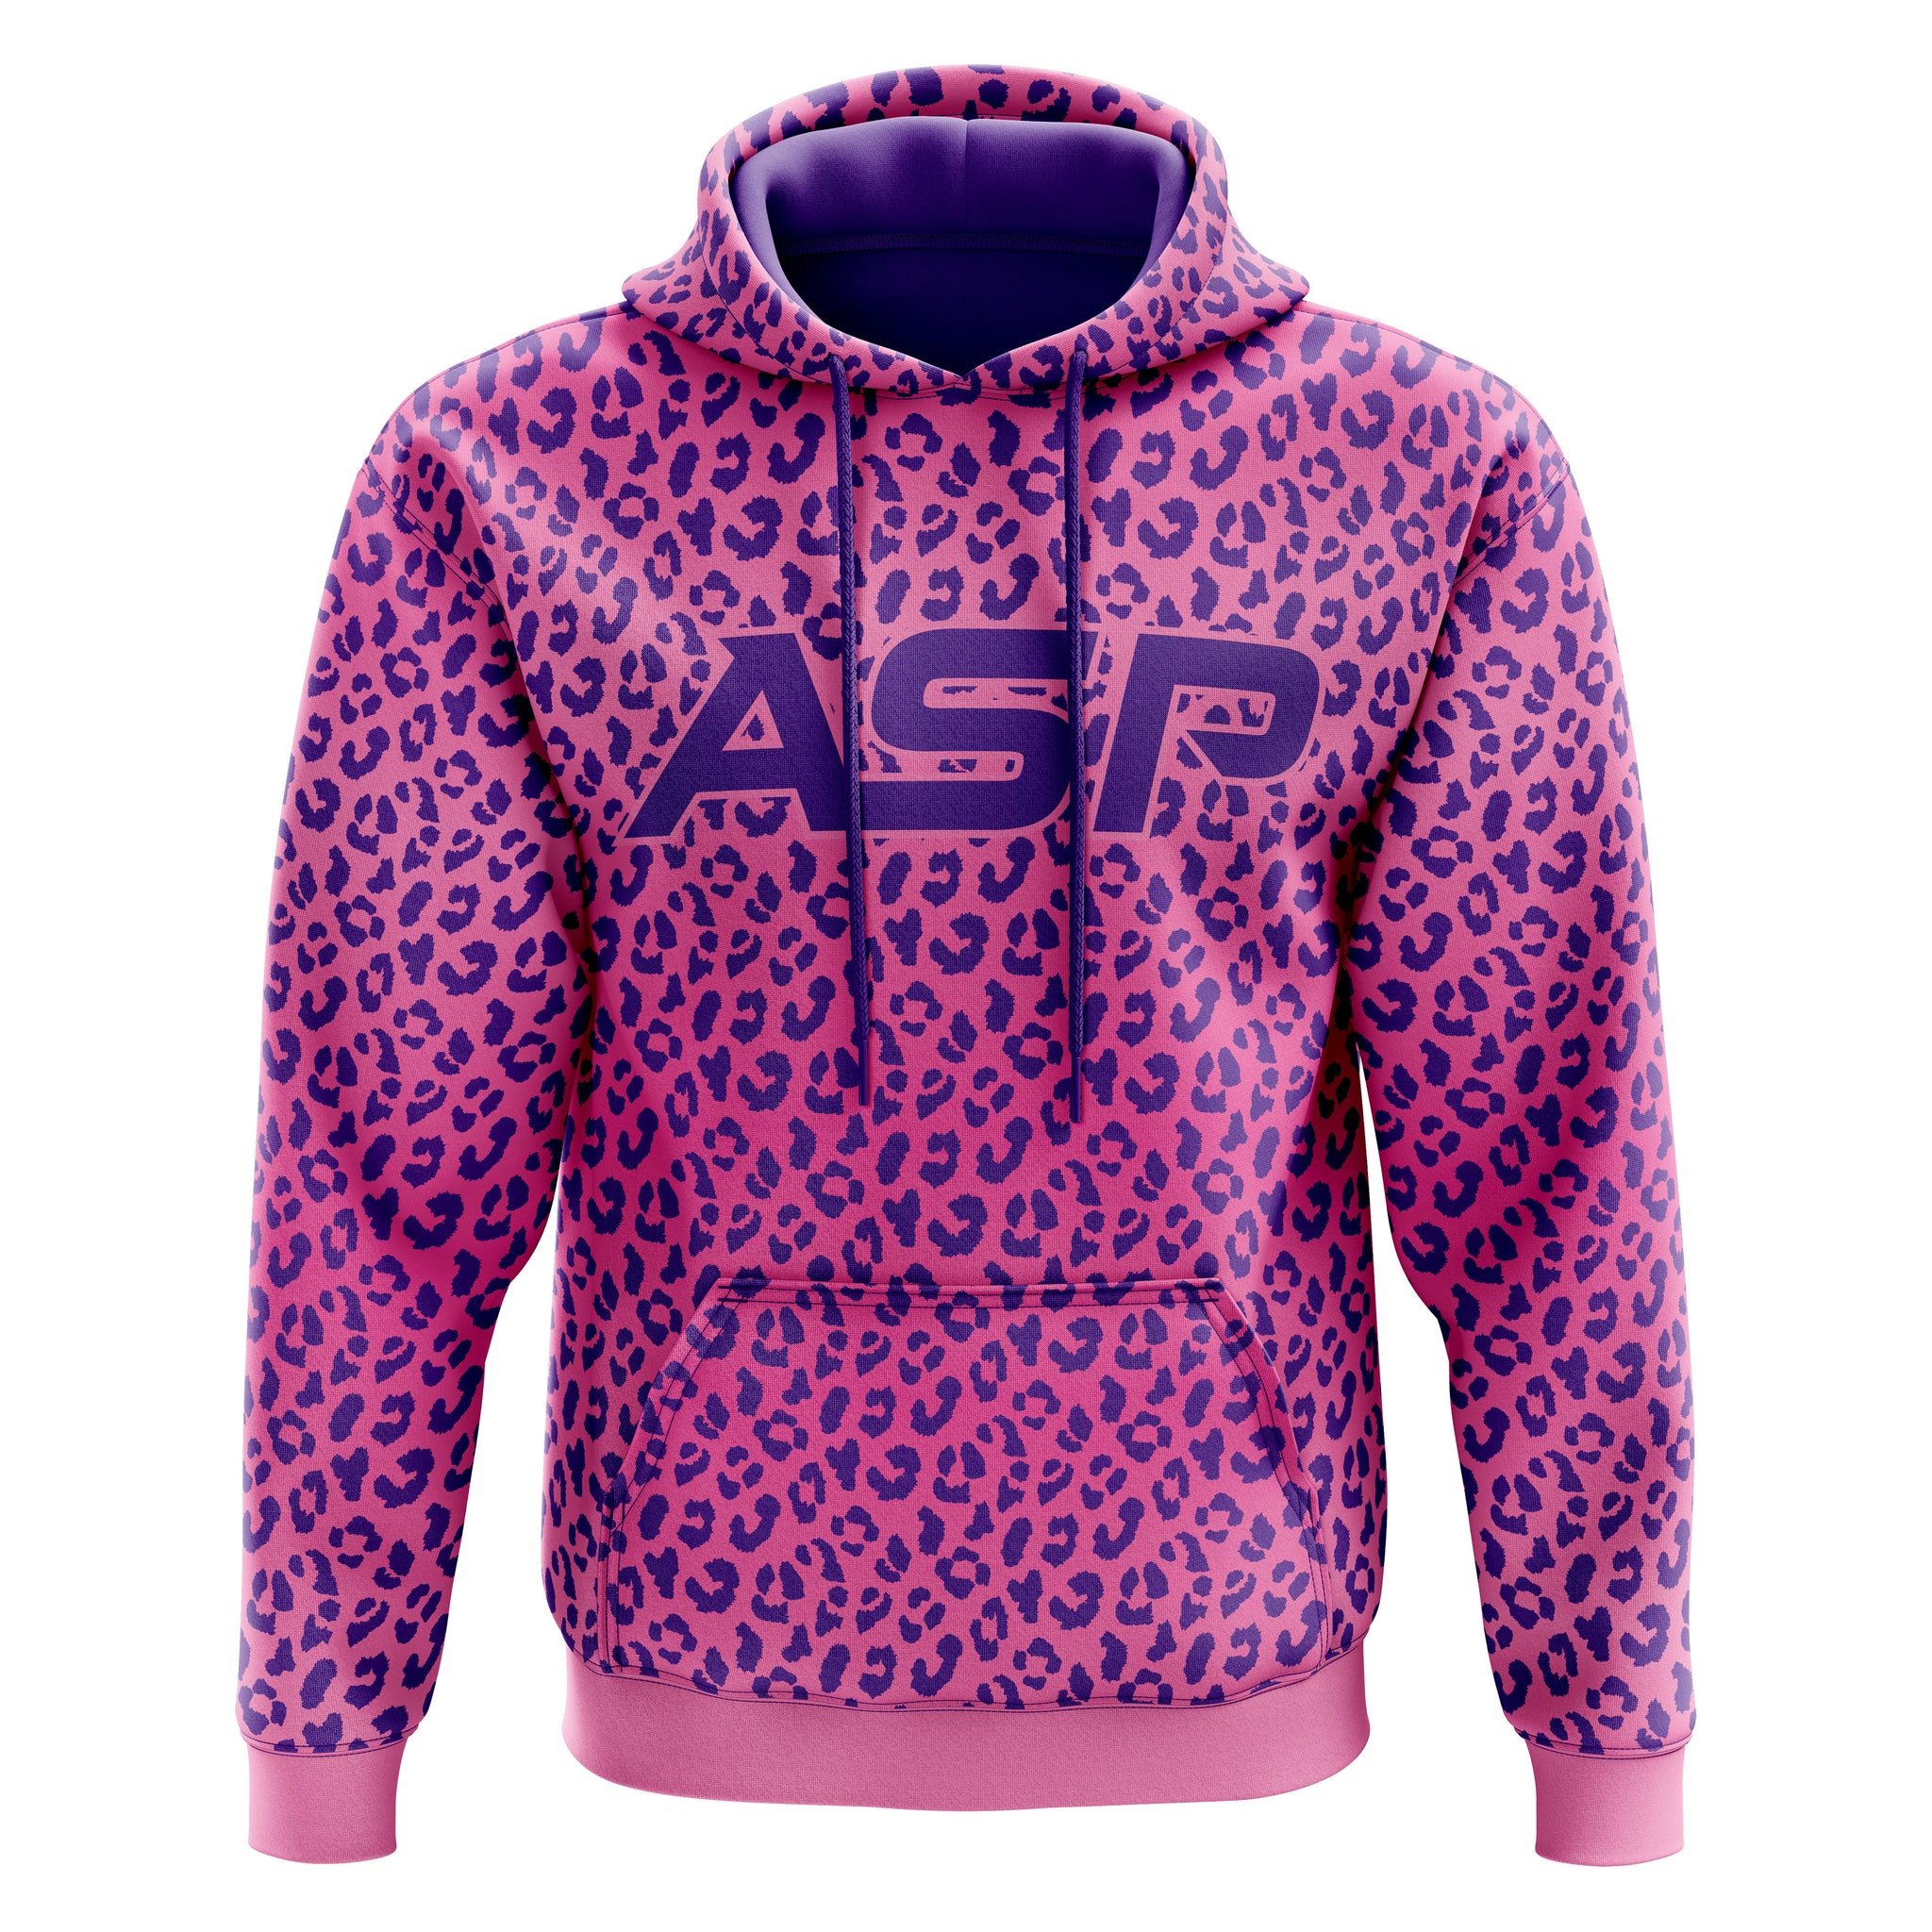 ASP Onyx Leopard Hoodie